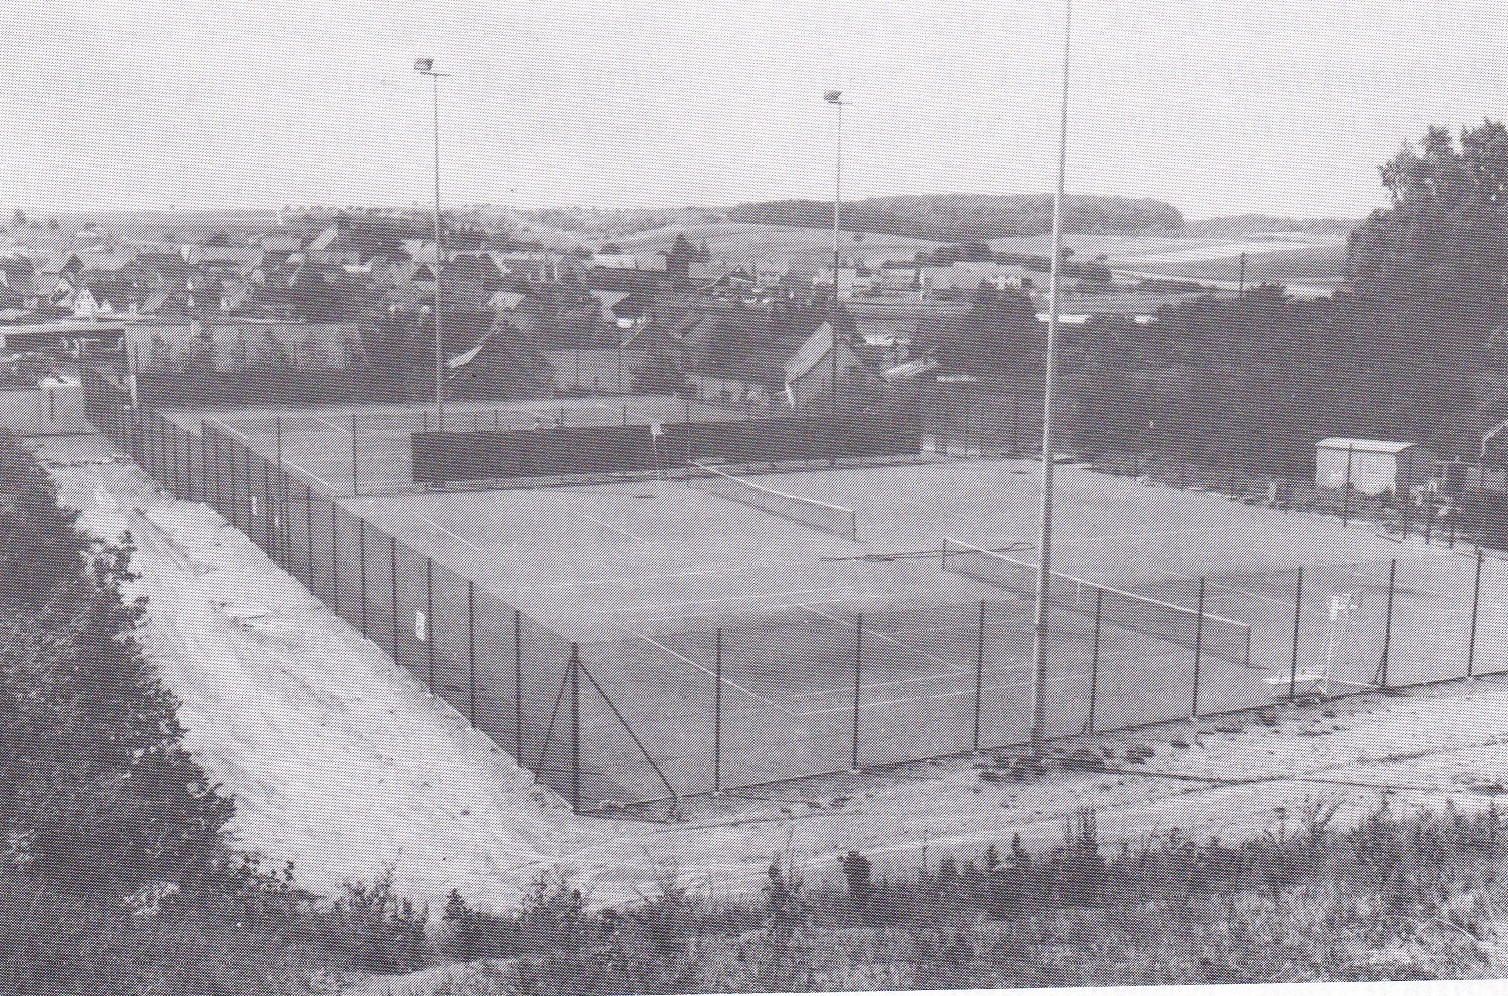  Blick auf den eingezäunten Tennisplatz mit zwei Spielfeldern, der am Ortsende errichtet wurde. Im Hintergrund die Häuser von Berwangen. - Das Bild wird mit Klick vergrößert 